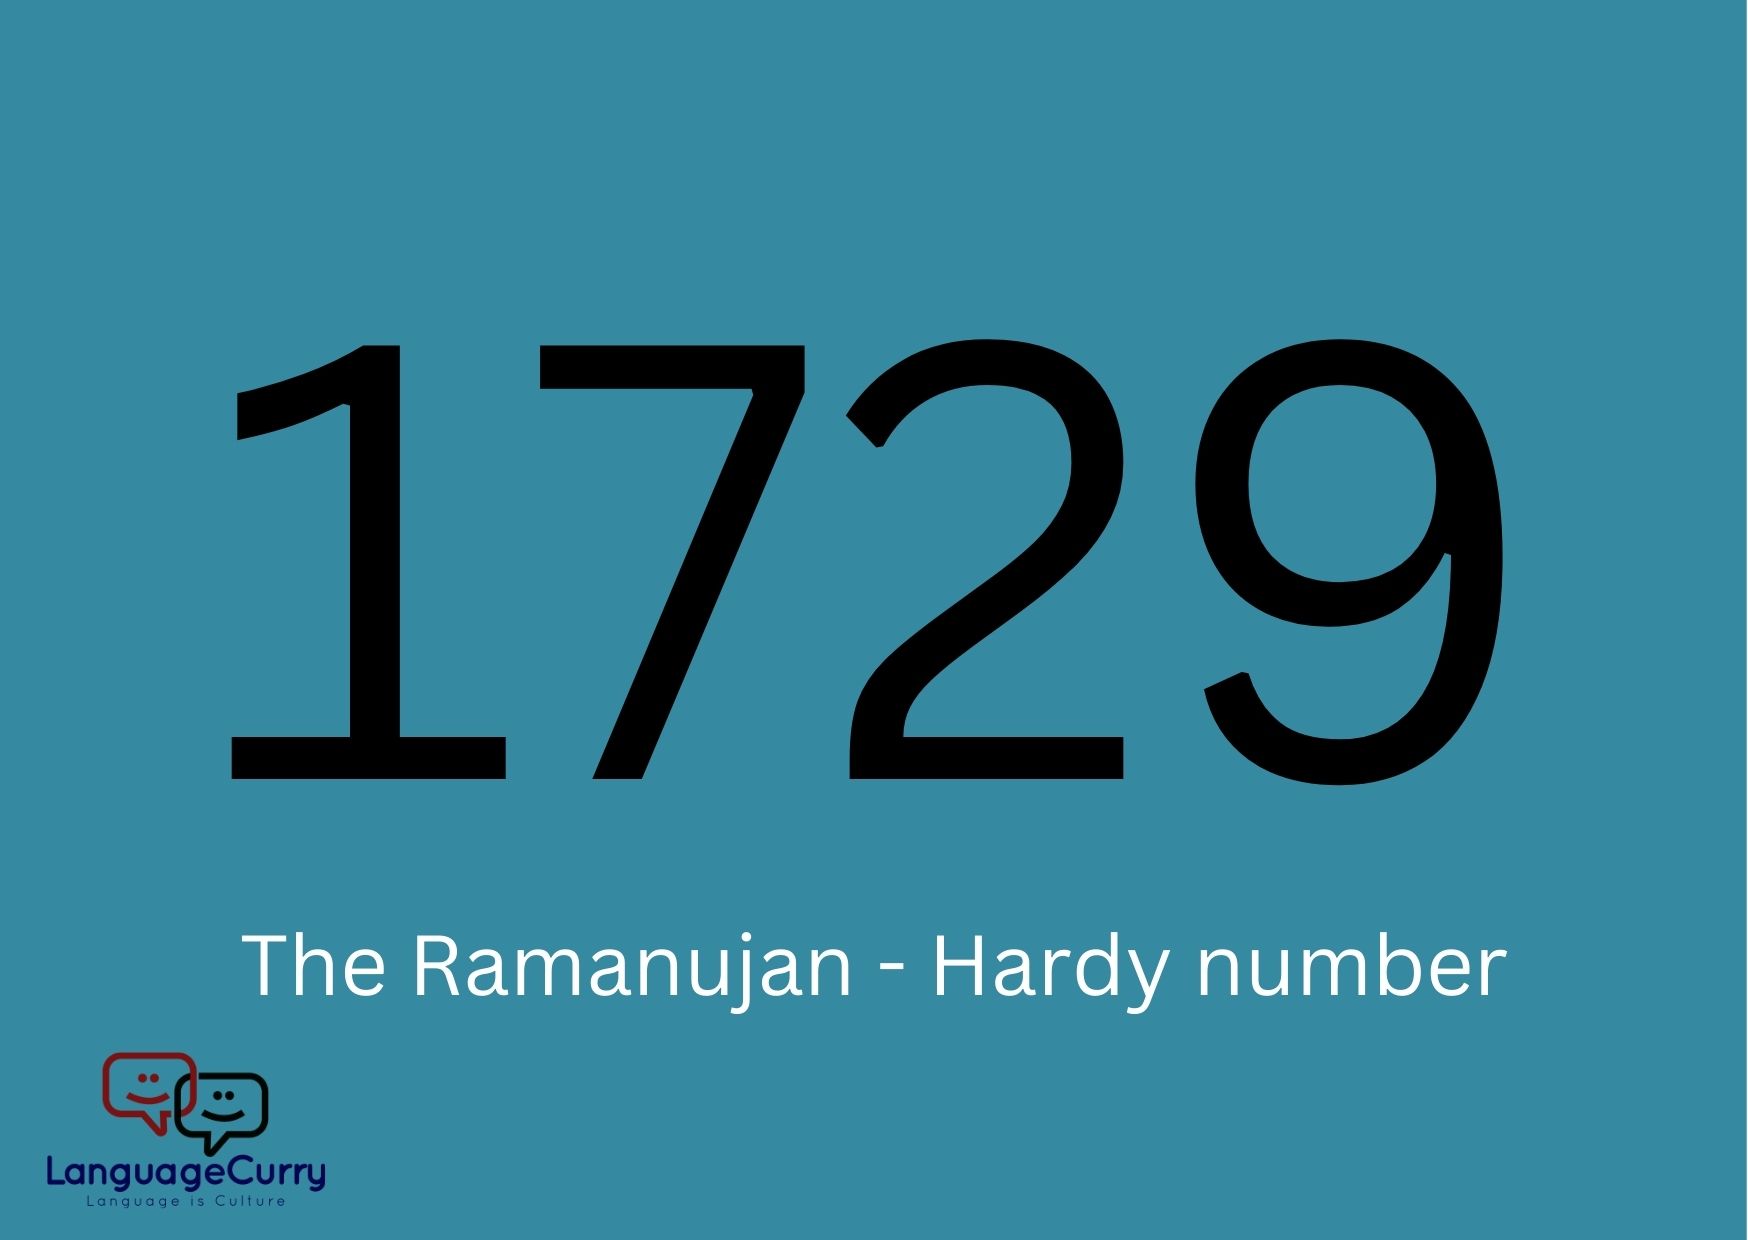 Ramanujan Hardy number 1729